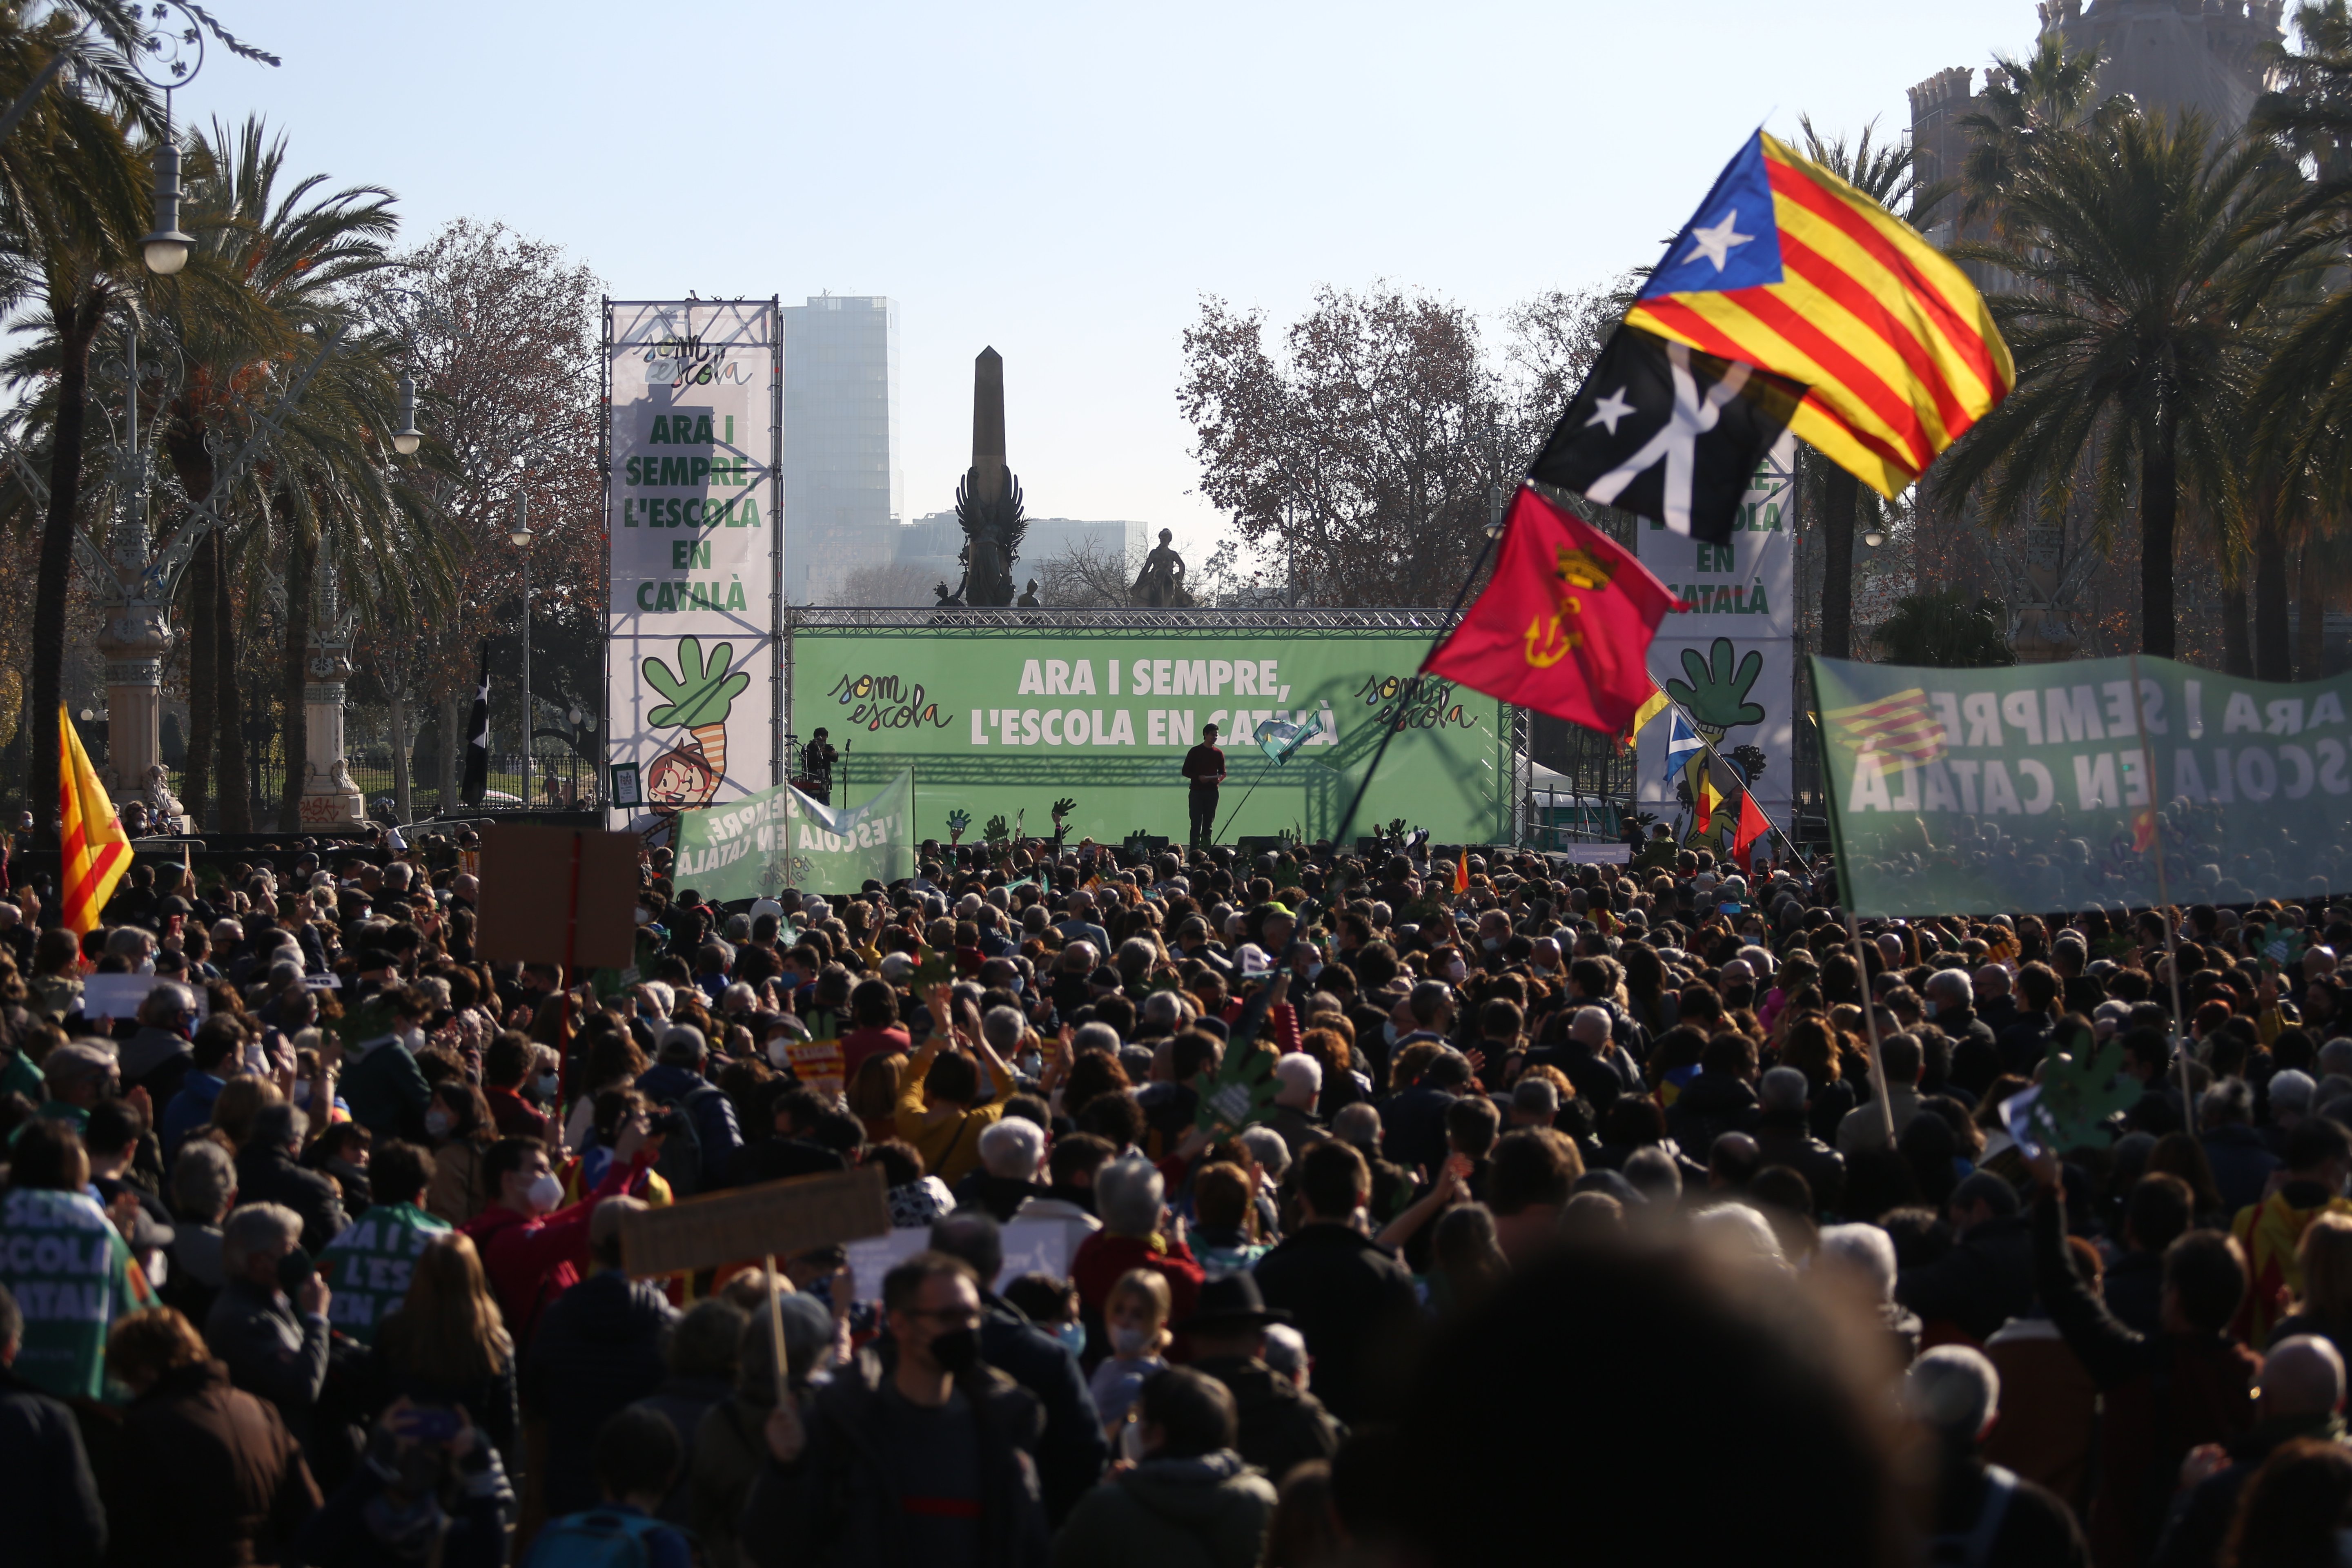 Les portades clamen pel català (alguns diaris no deixen de sorprendre)